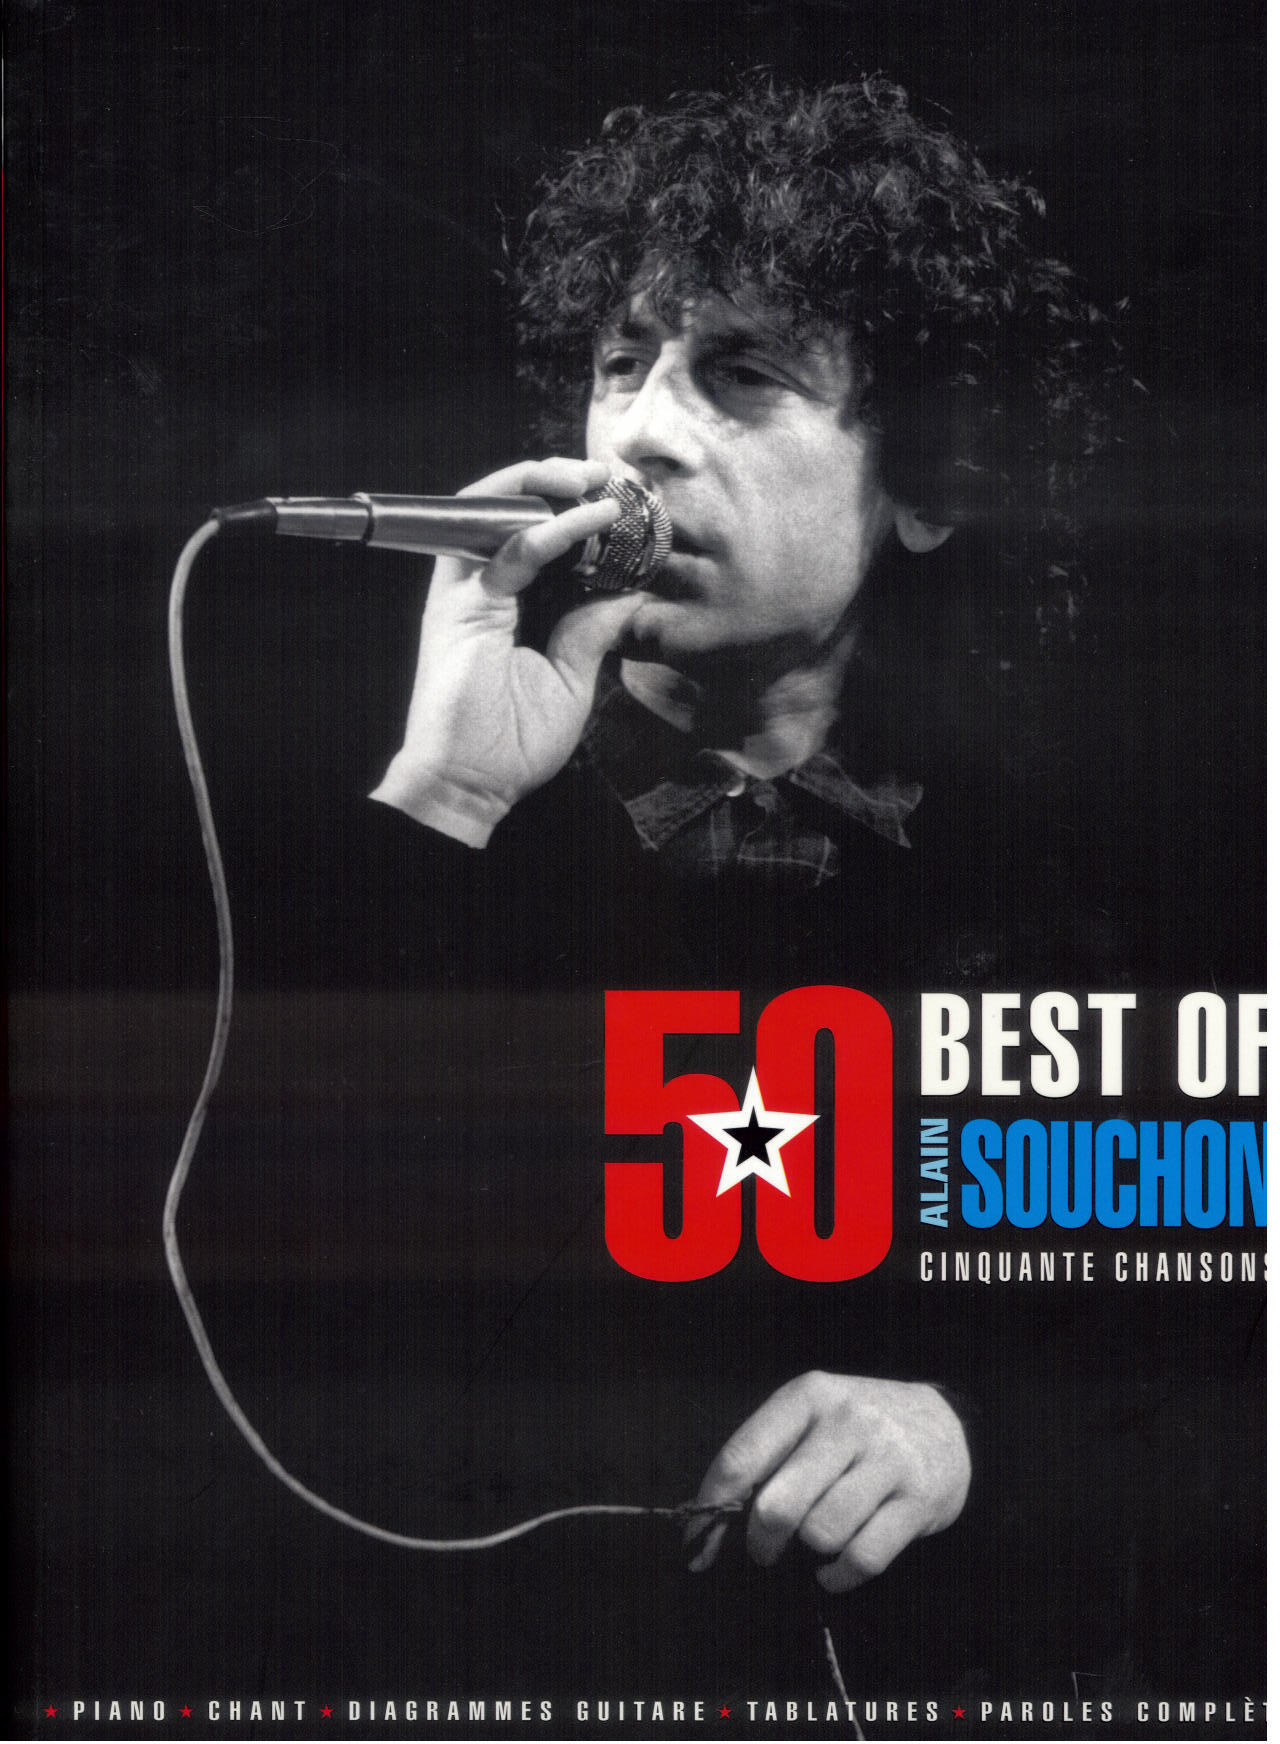 Best of Alain Souchon 50 chansons : photo 1